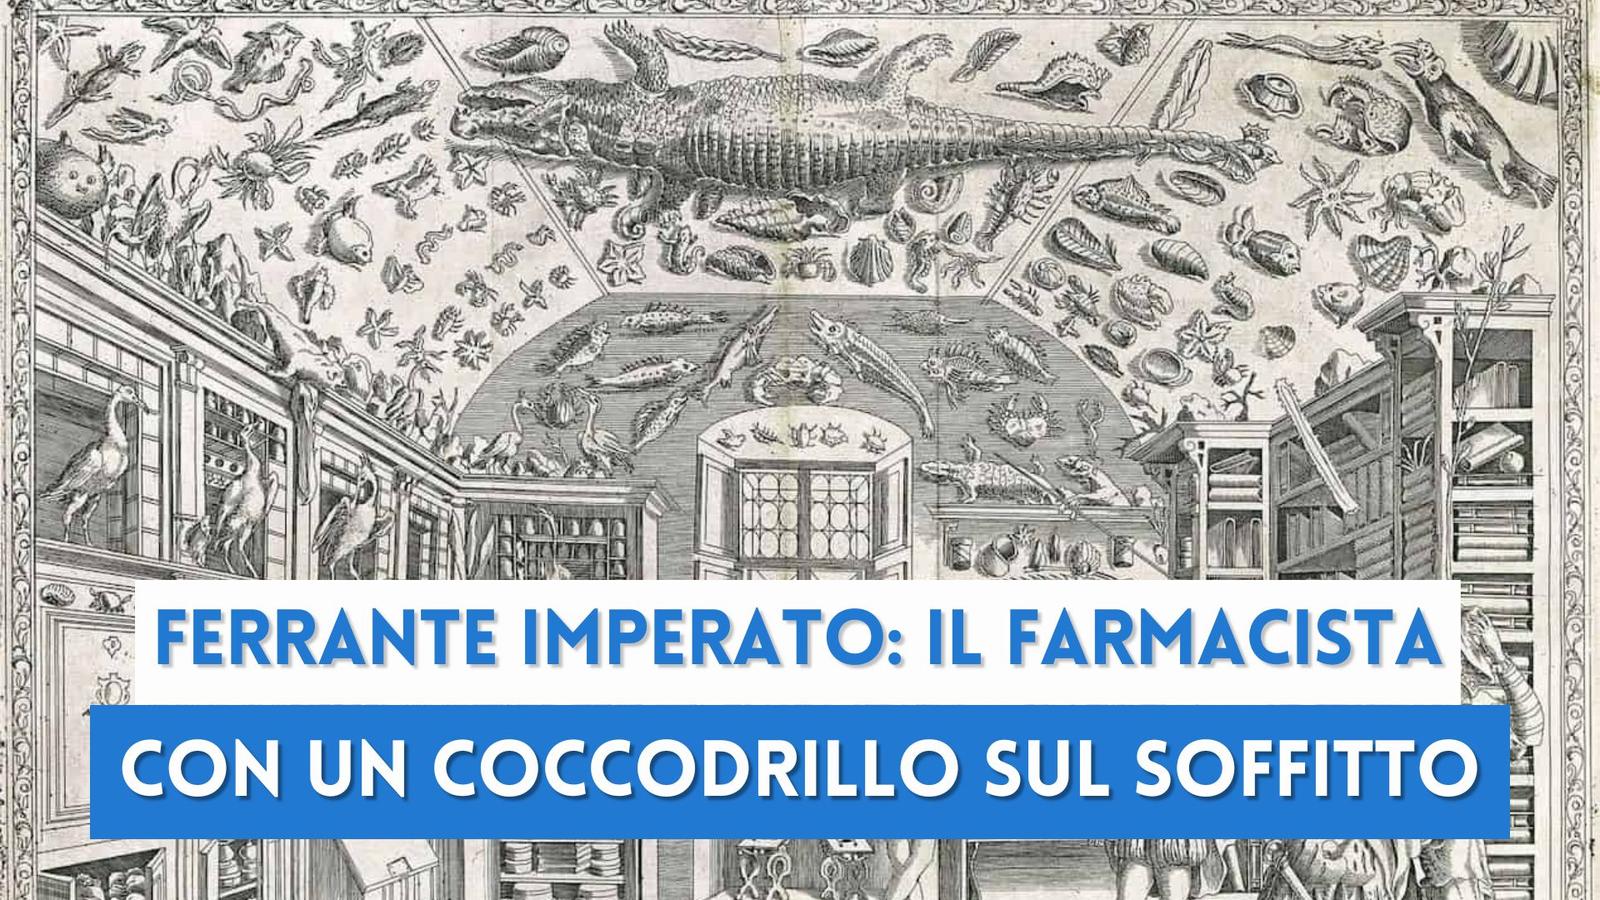 Ferrante Imperato: il farmacista napoletano che aveva un coccodrillo sul soffitto